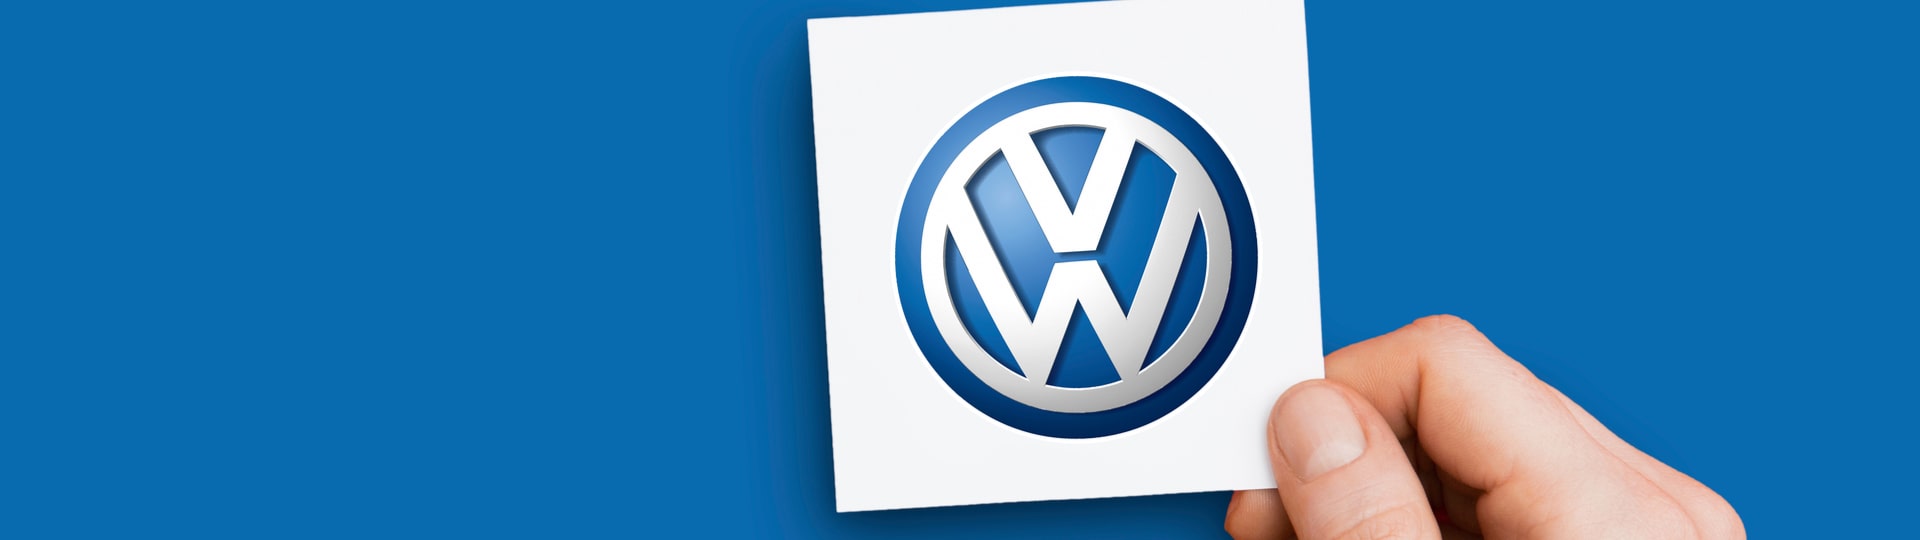 VW se chce zaměřit na dražší vozy